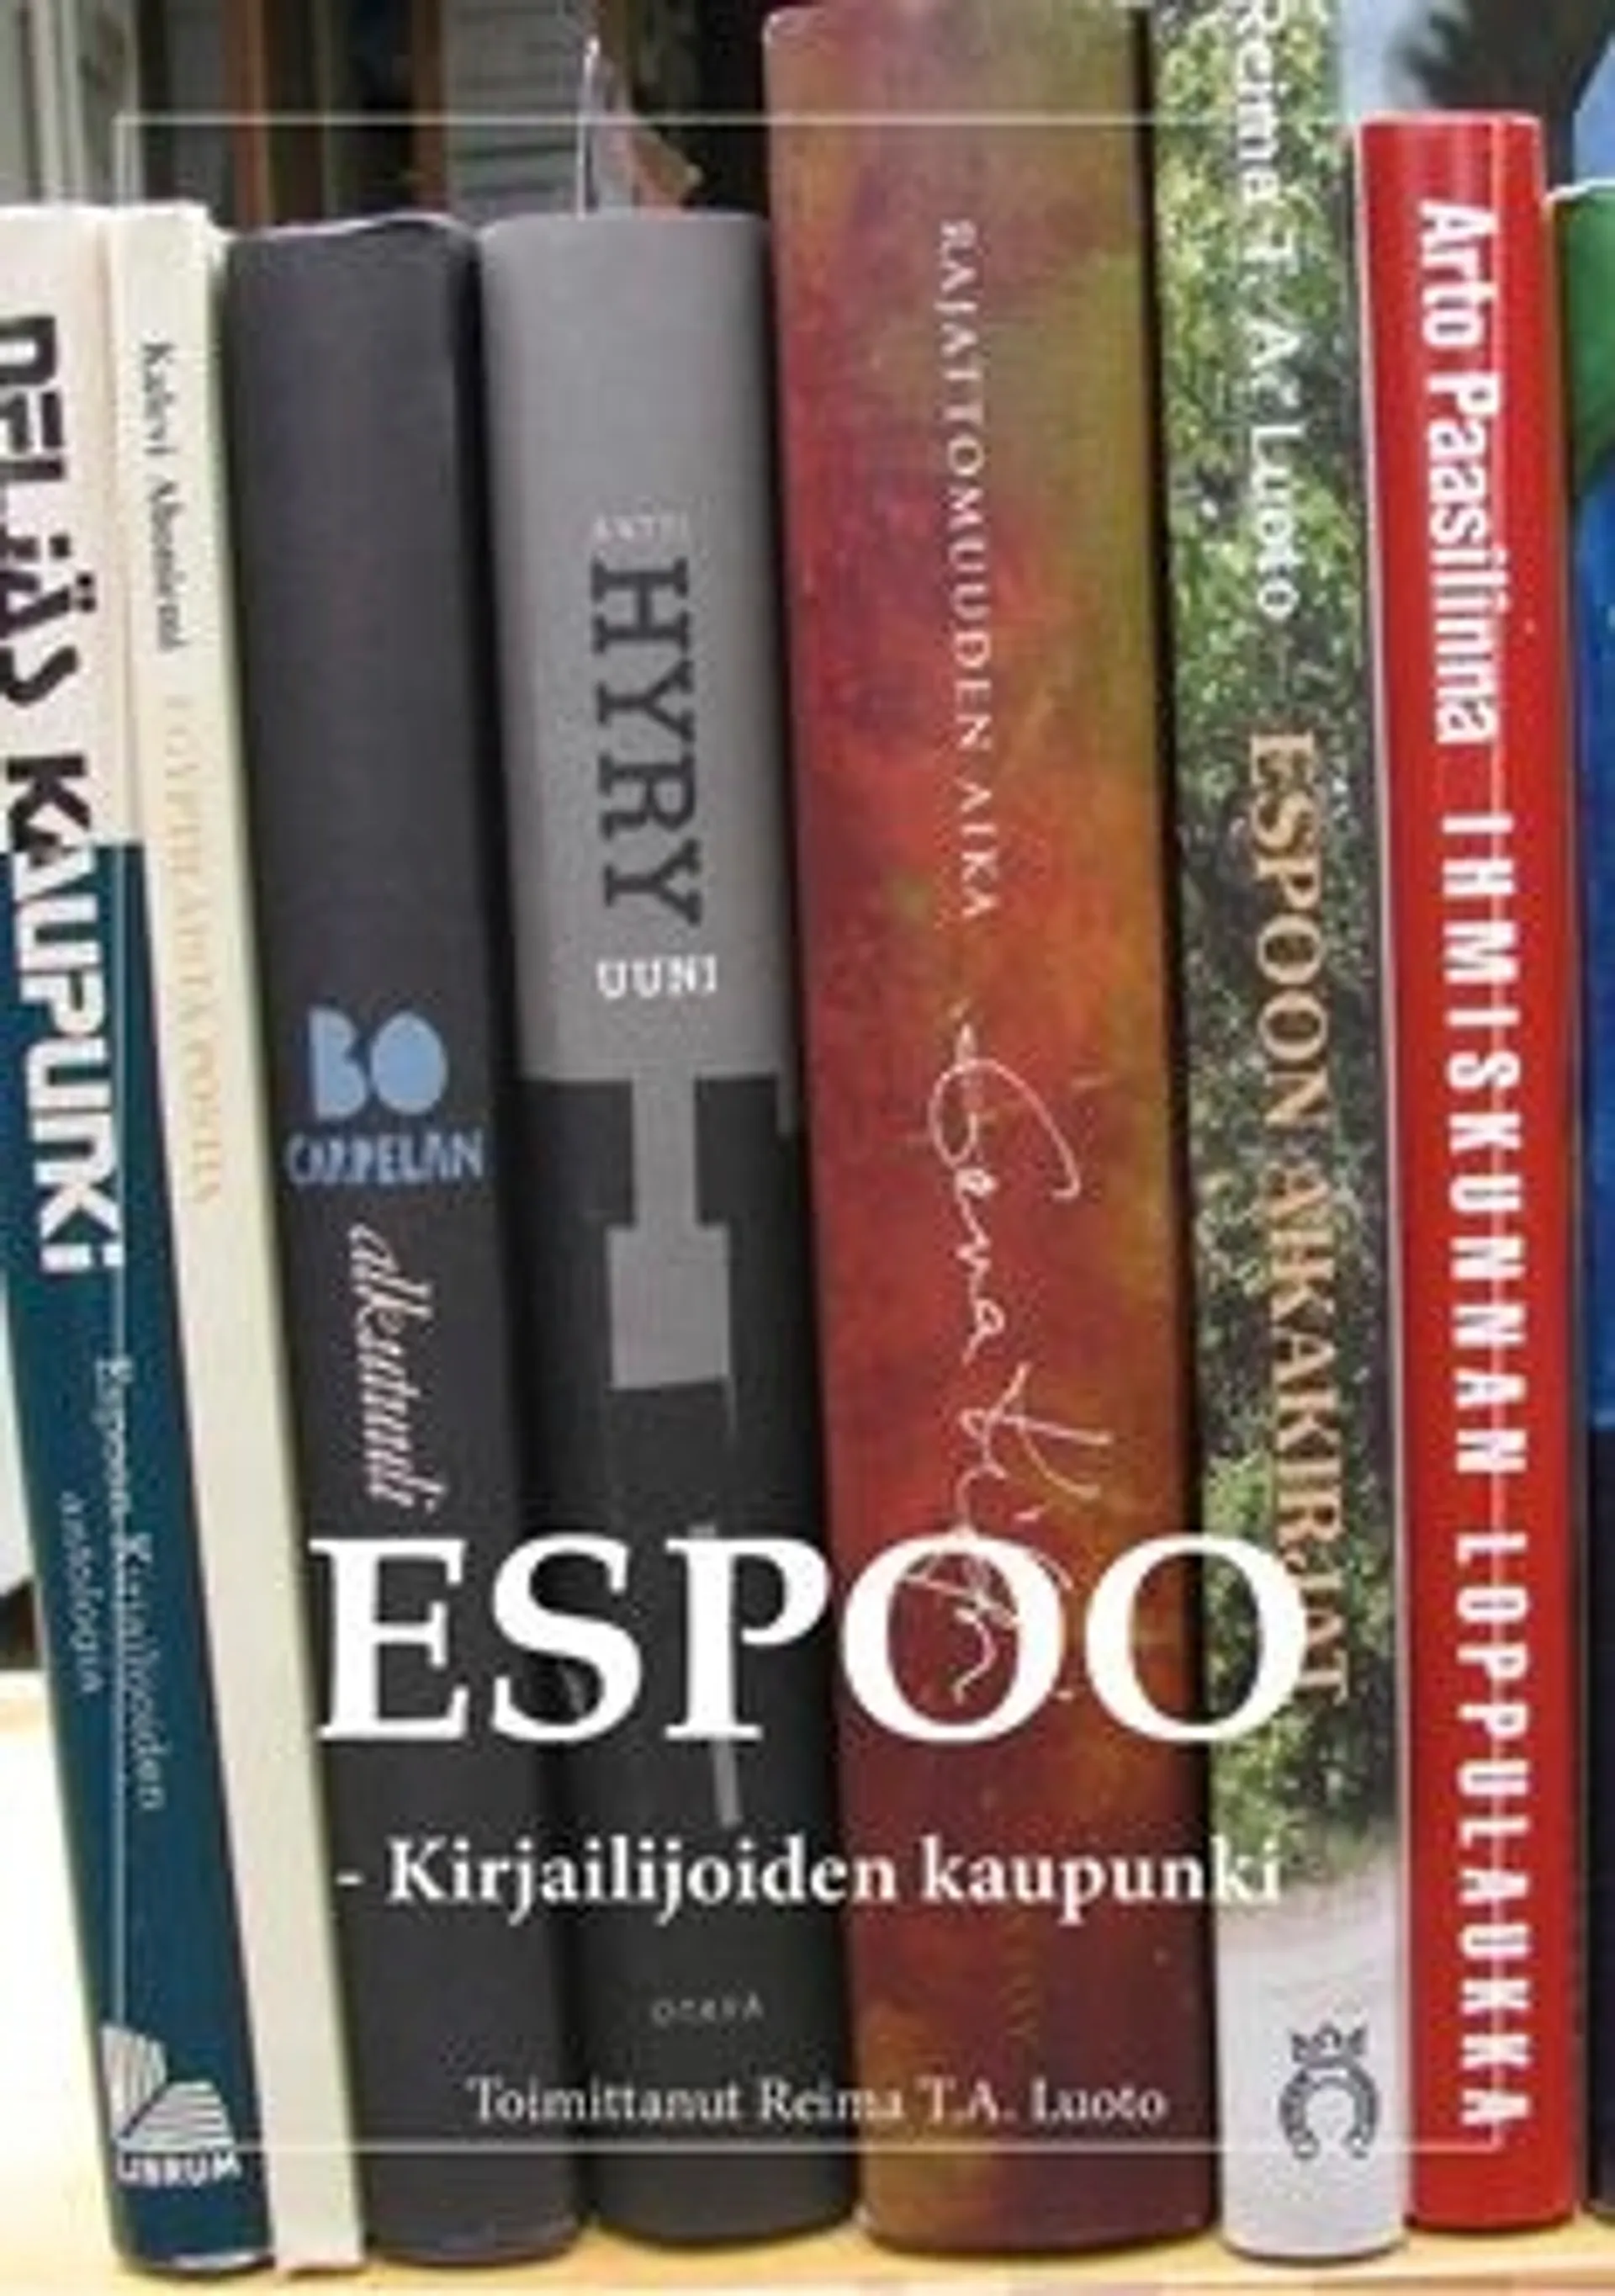 Espoo - kirjailijoiden kaupunki